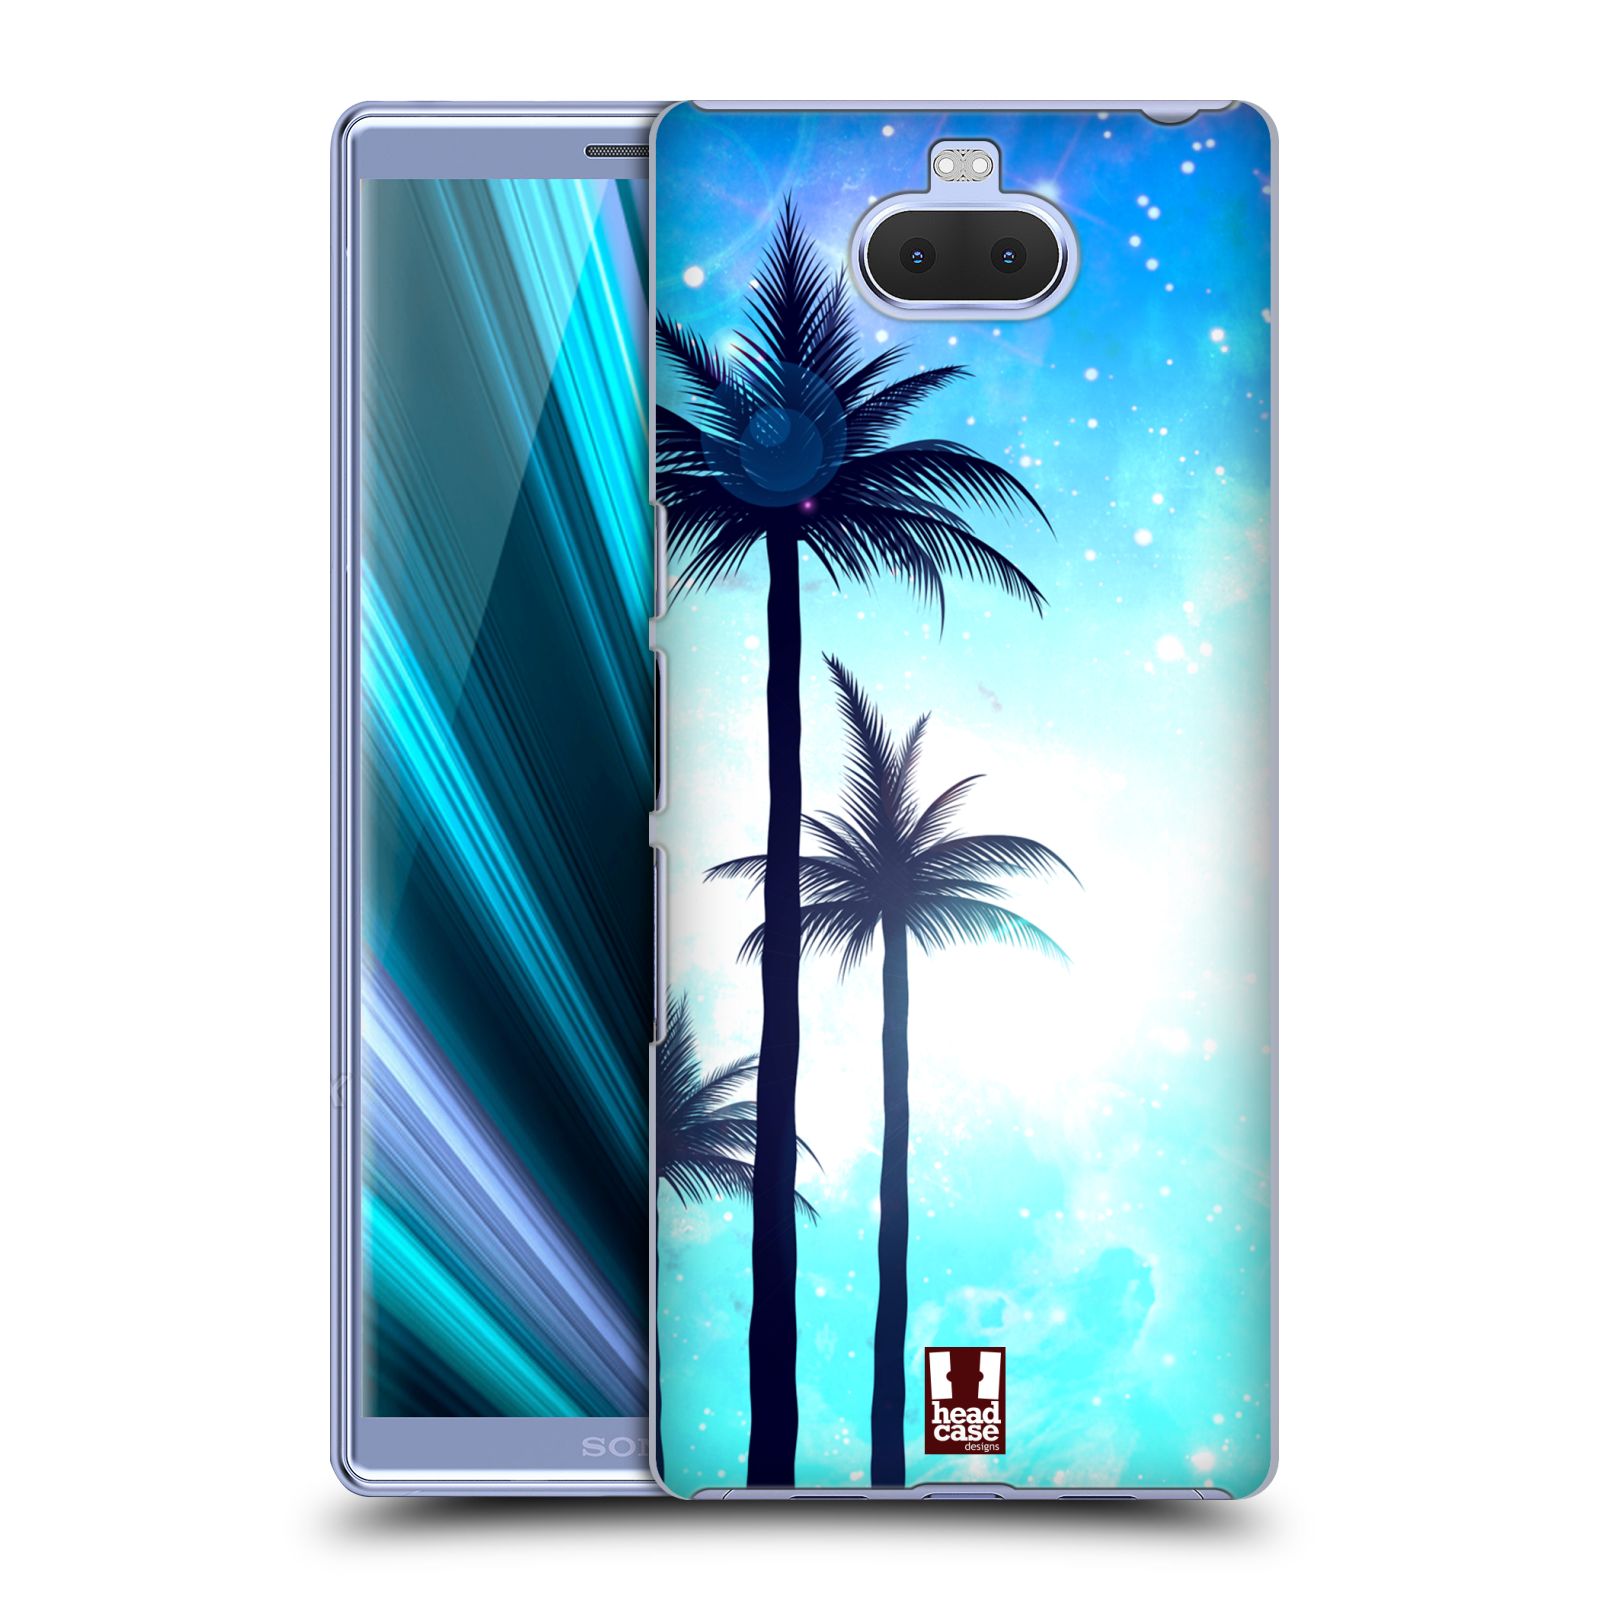 Pouzdro na mobil Sony Xperia 10 - Head Case - vzor Kreslený motiv silueta moře a palmy MODRÁ